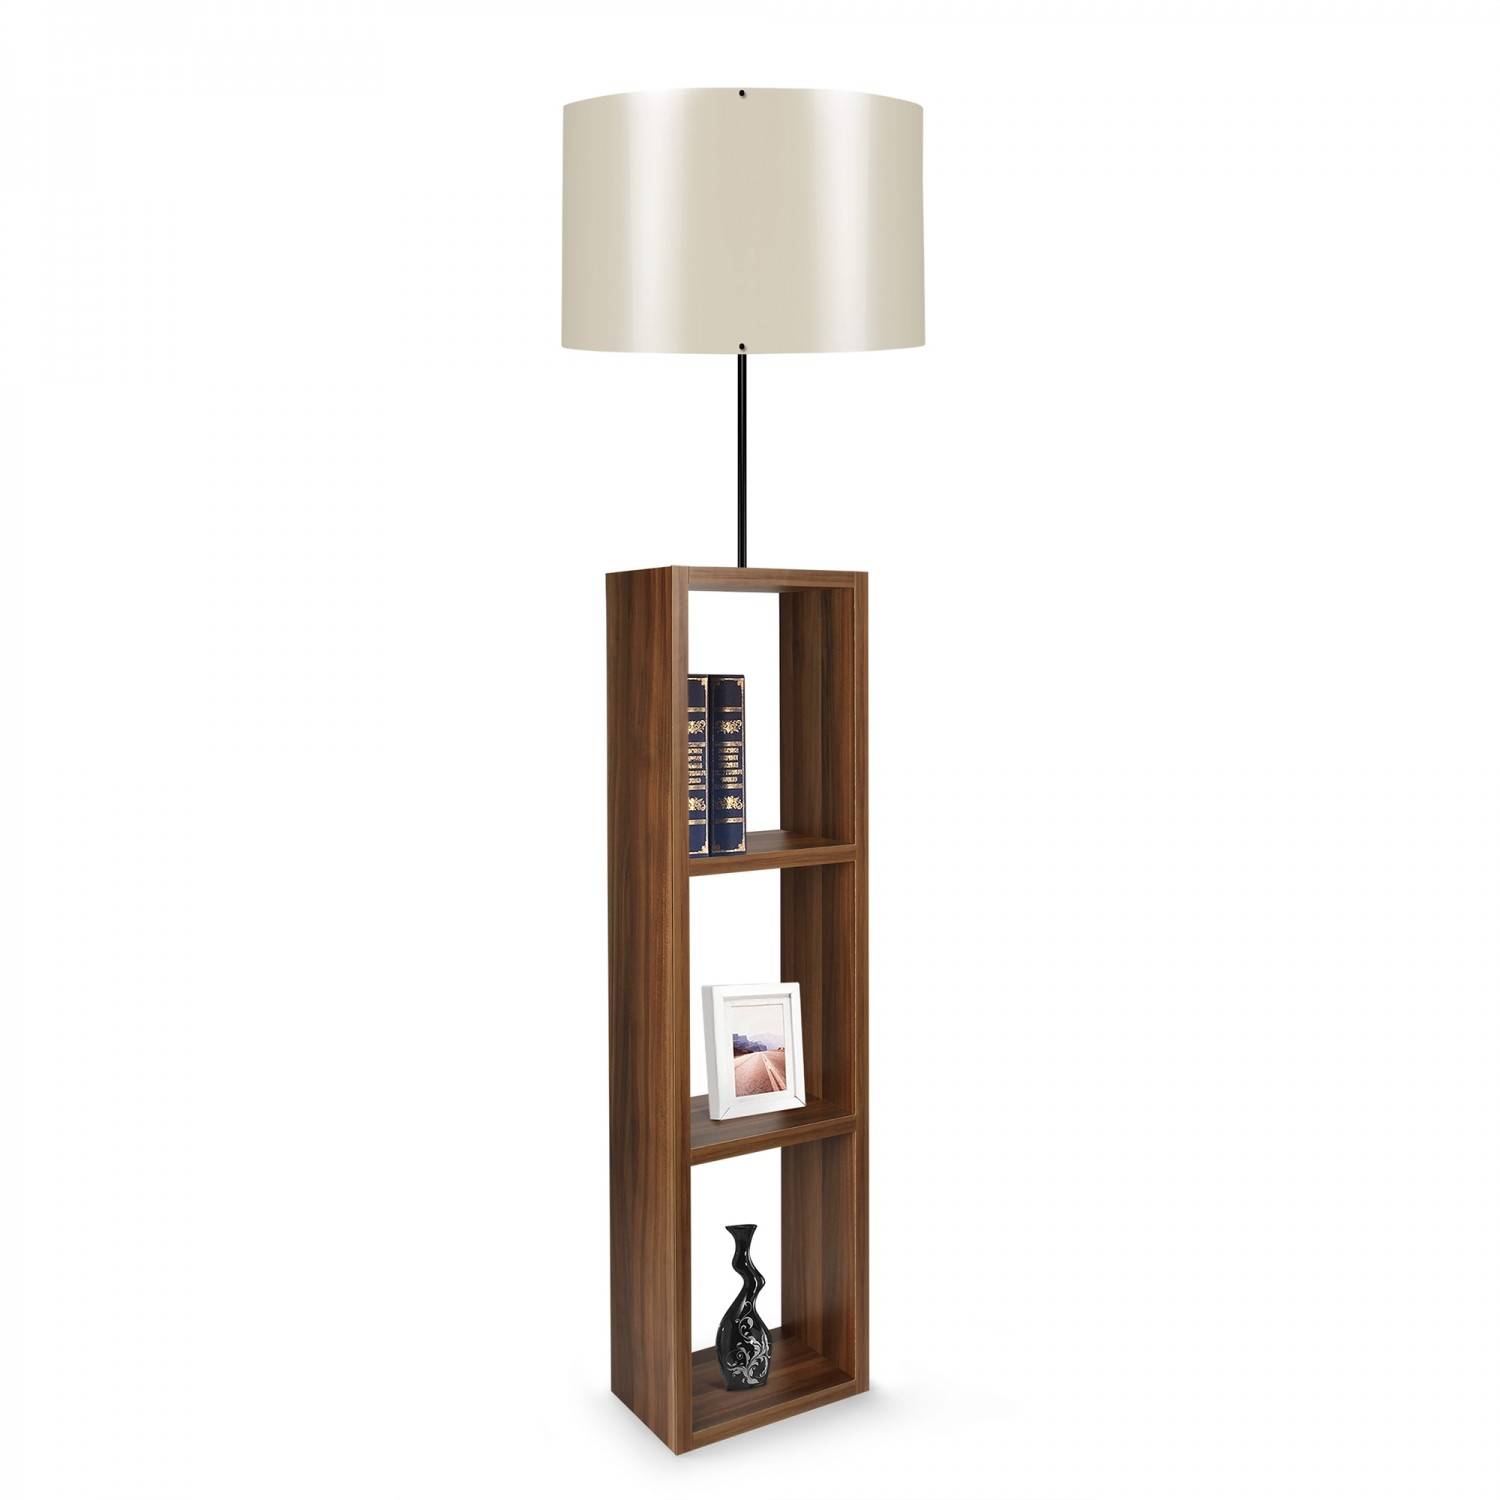 Taura 3-planks combinatie vloerlamp in glanzend witte stof en bruin hout